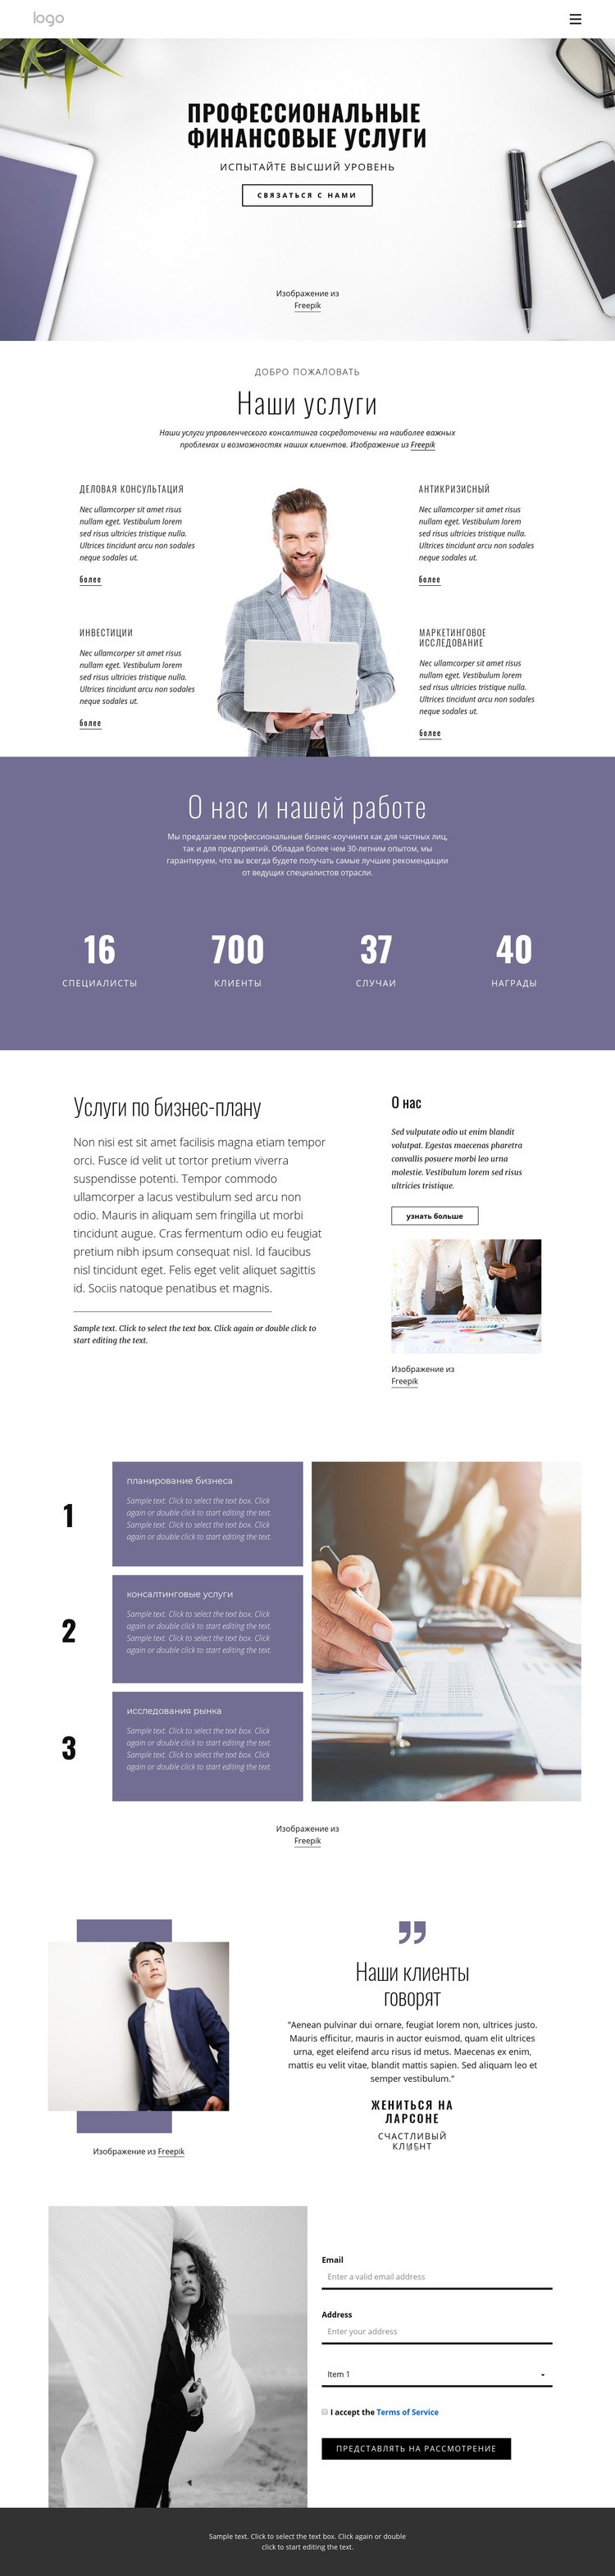 Профессиональные финансовые услуги Дизайн сайта